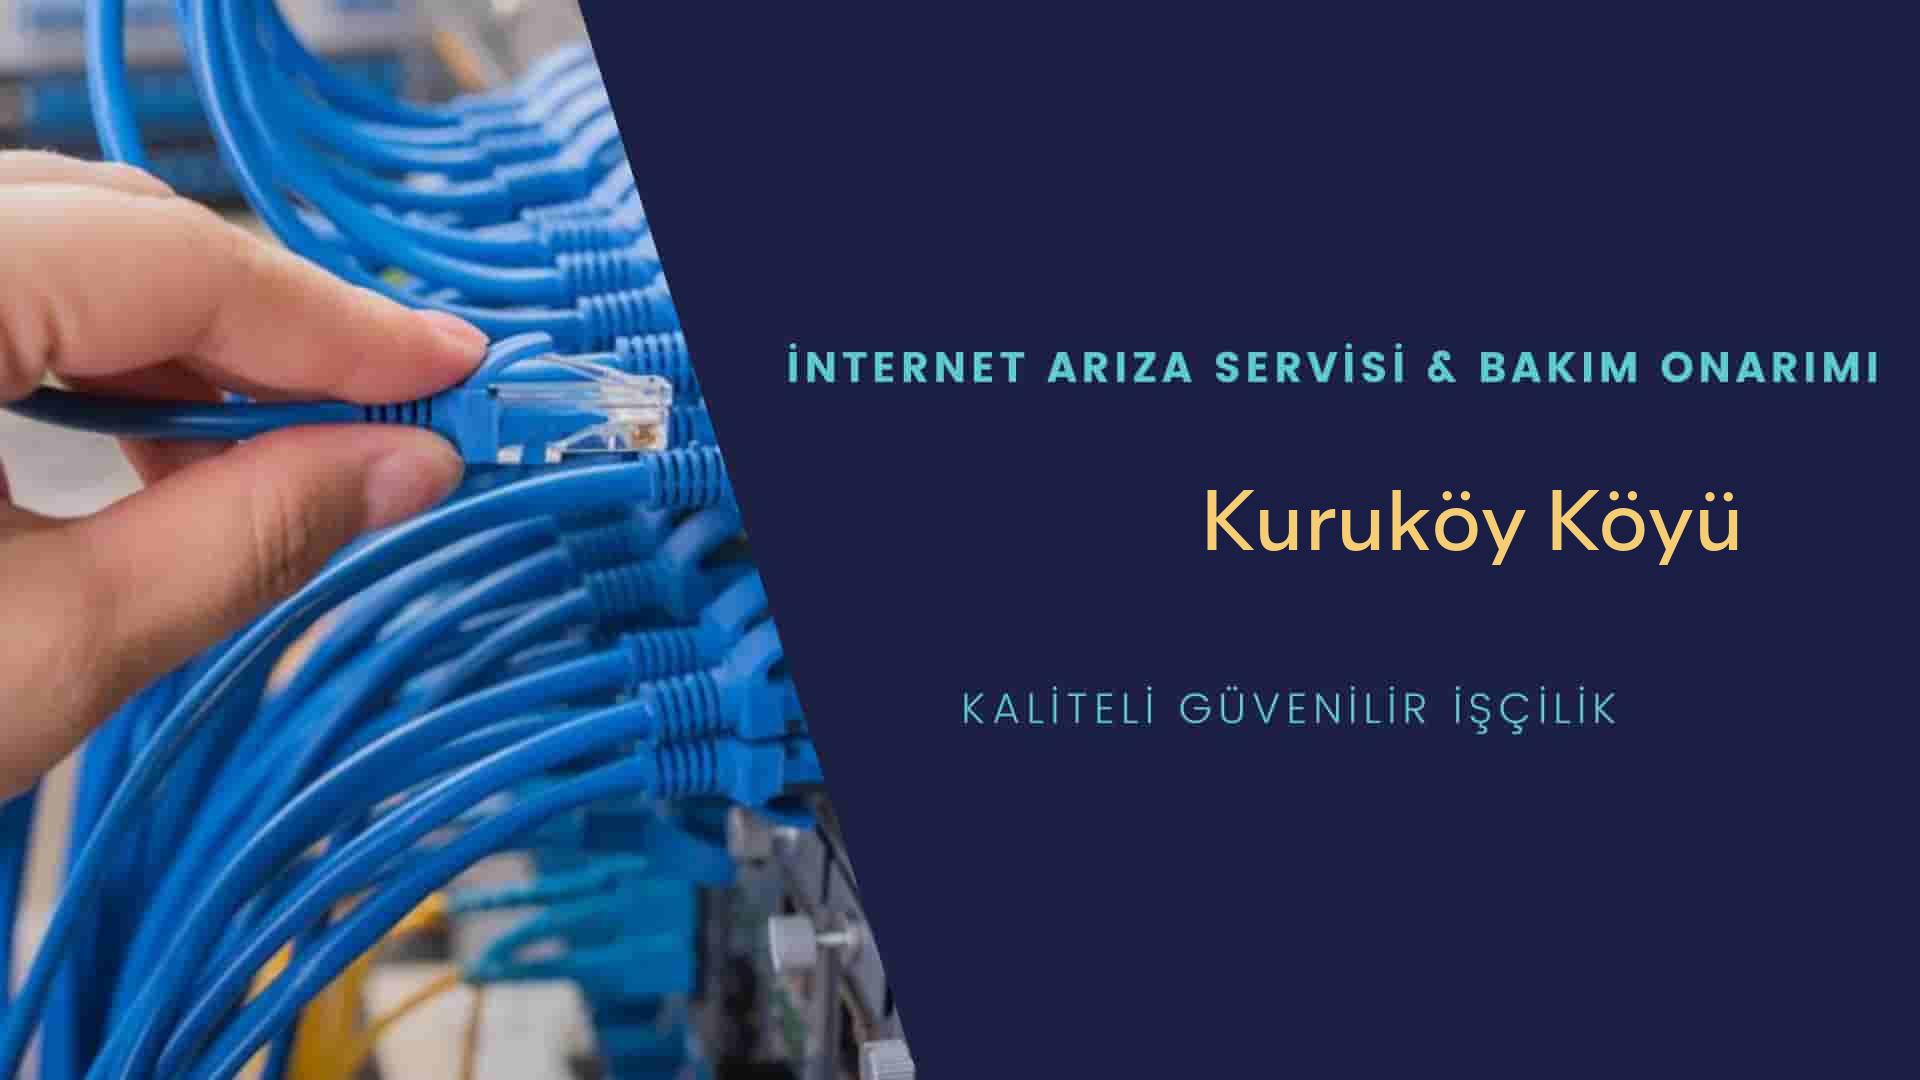 Kuruköy Köyü internet kablosu çekimi yapan yerler veya elektrikçiler mi? arıyorsunuz doğru yerdesiniz o zaman sizlere 7/24 yardımcı olacak profesyonel ustalarımız bir telefon kadar yakındır size.